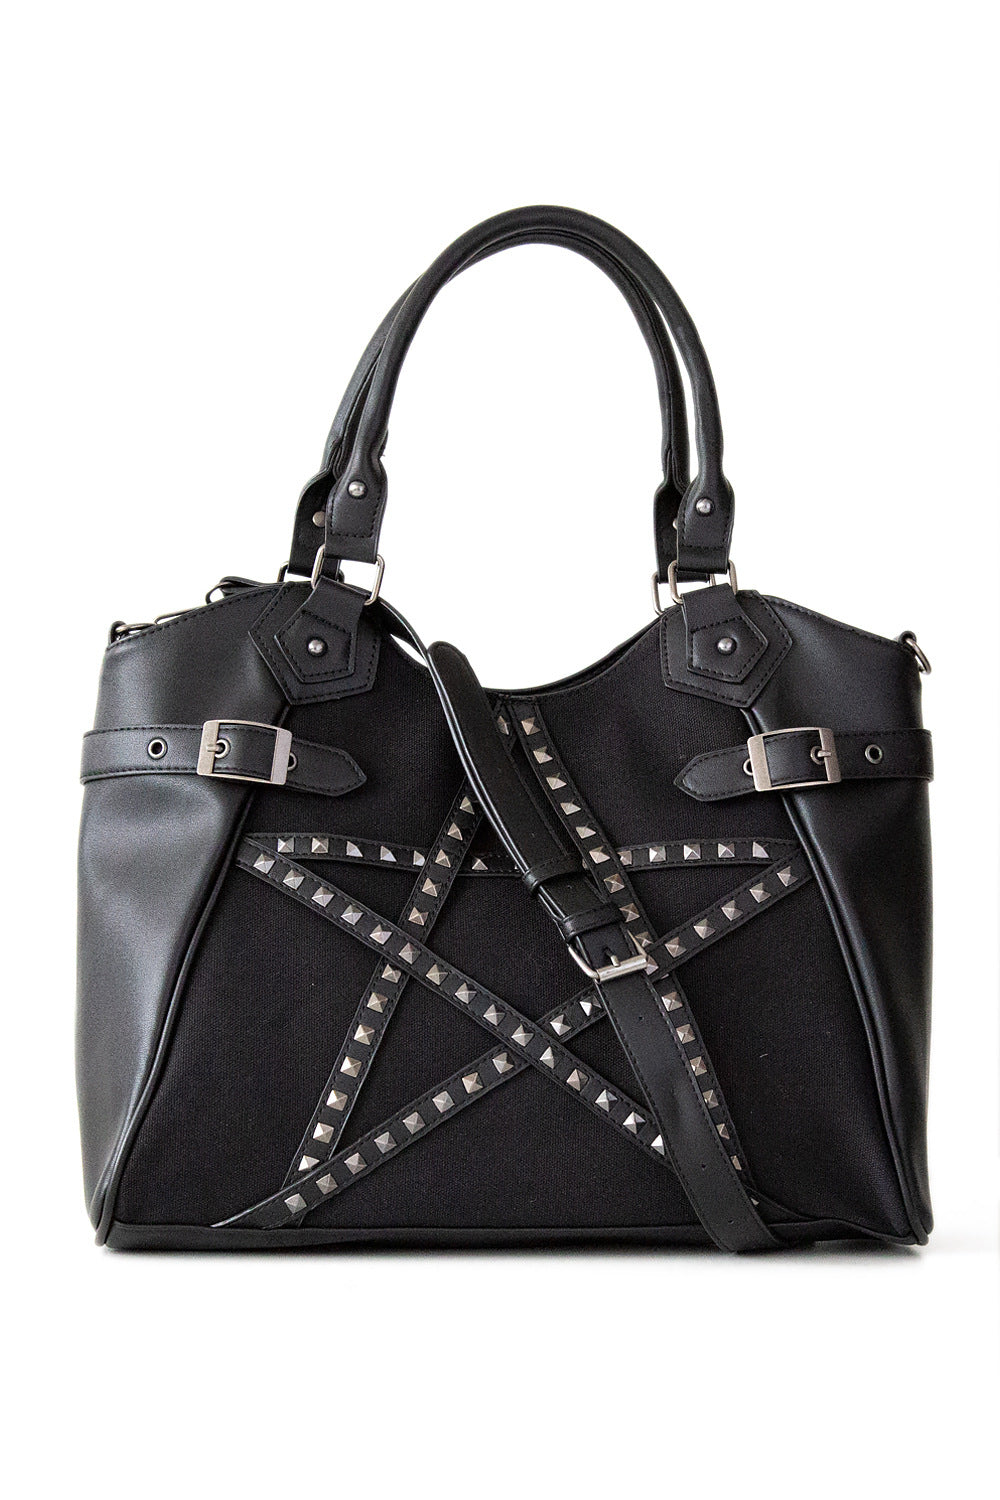 Black handbag with studded pentagram front